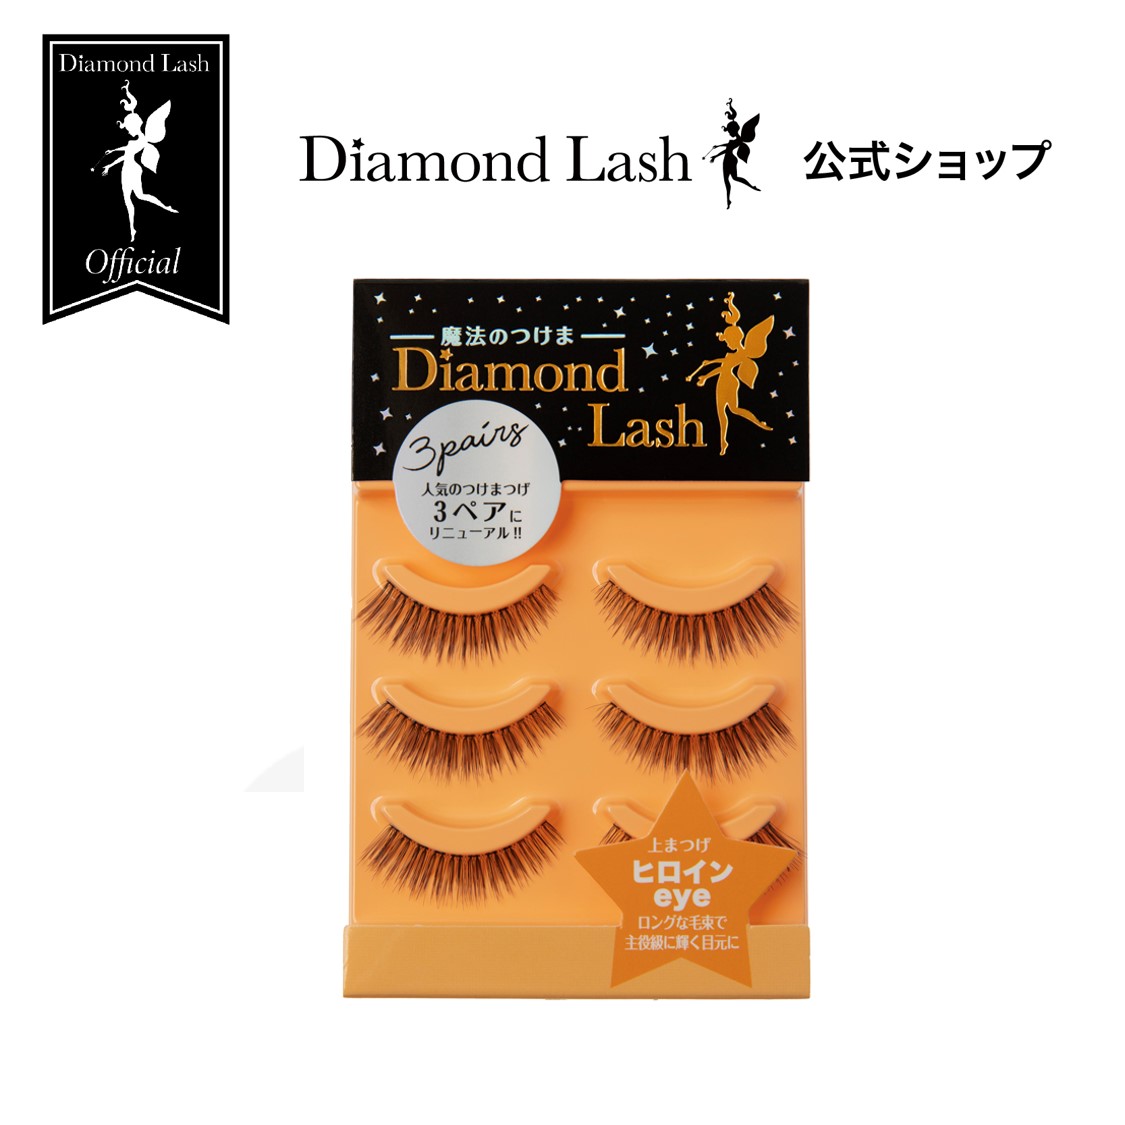 【楽天市場】【ダイヤモンドラッシュ公式】 DiamondLash ヌーディ 